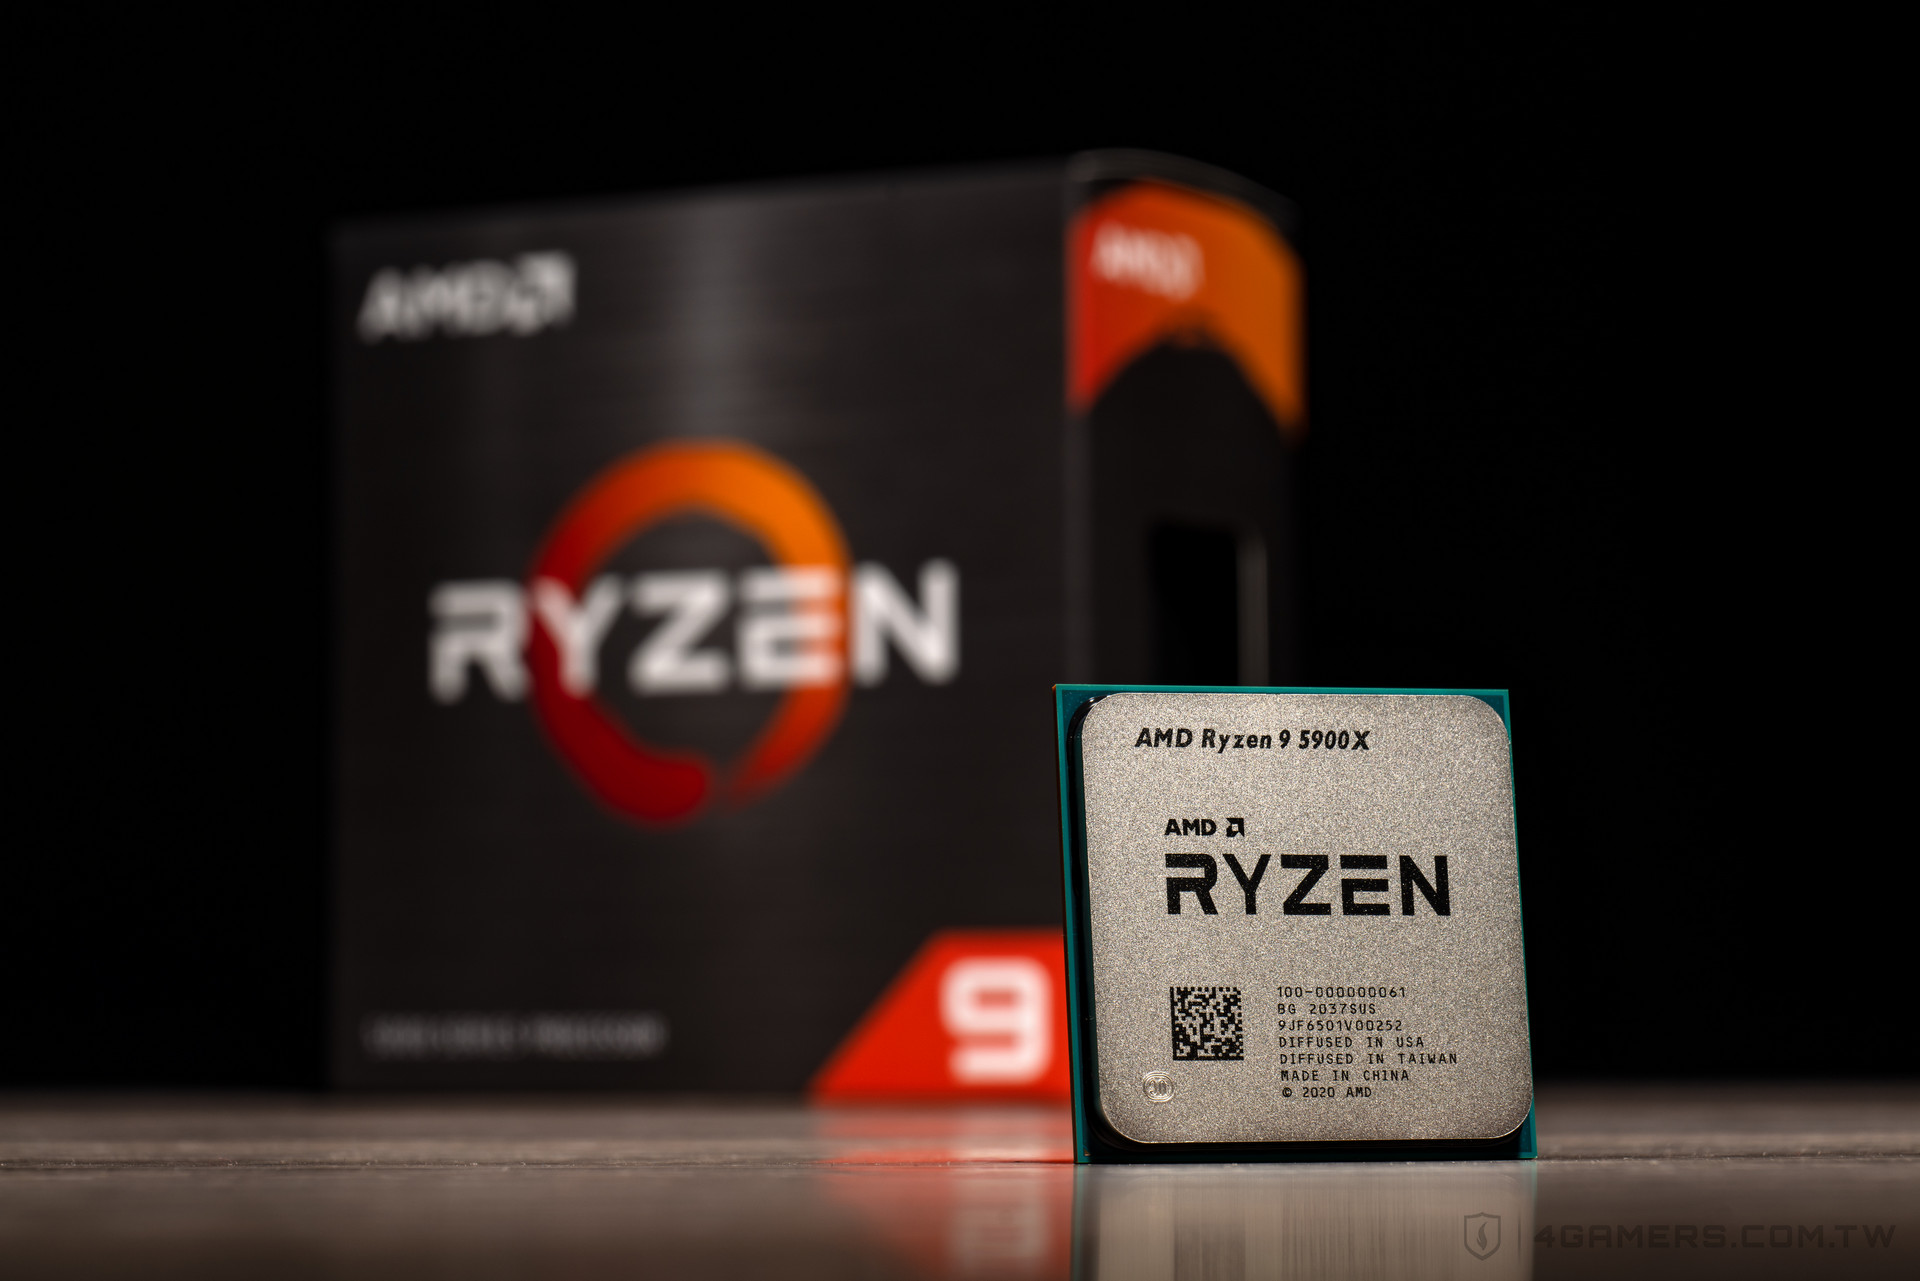 9 5900x купить. Процессор АМД 9 5900. Процессор AMD Ryzen 9. Процессор AMD Ryzen 9 Vermeer. Процессор AMD Ryzen 7 5800x.